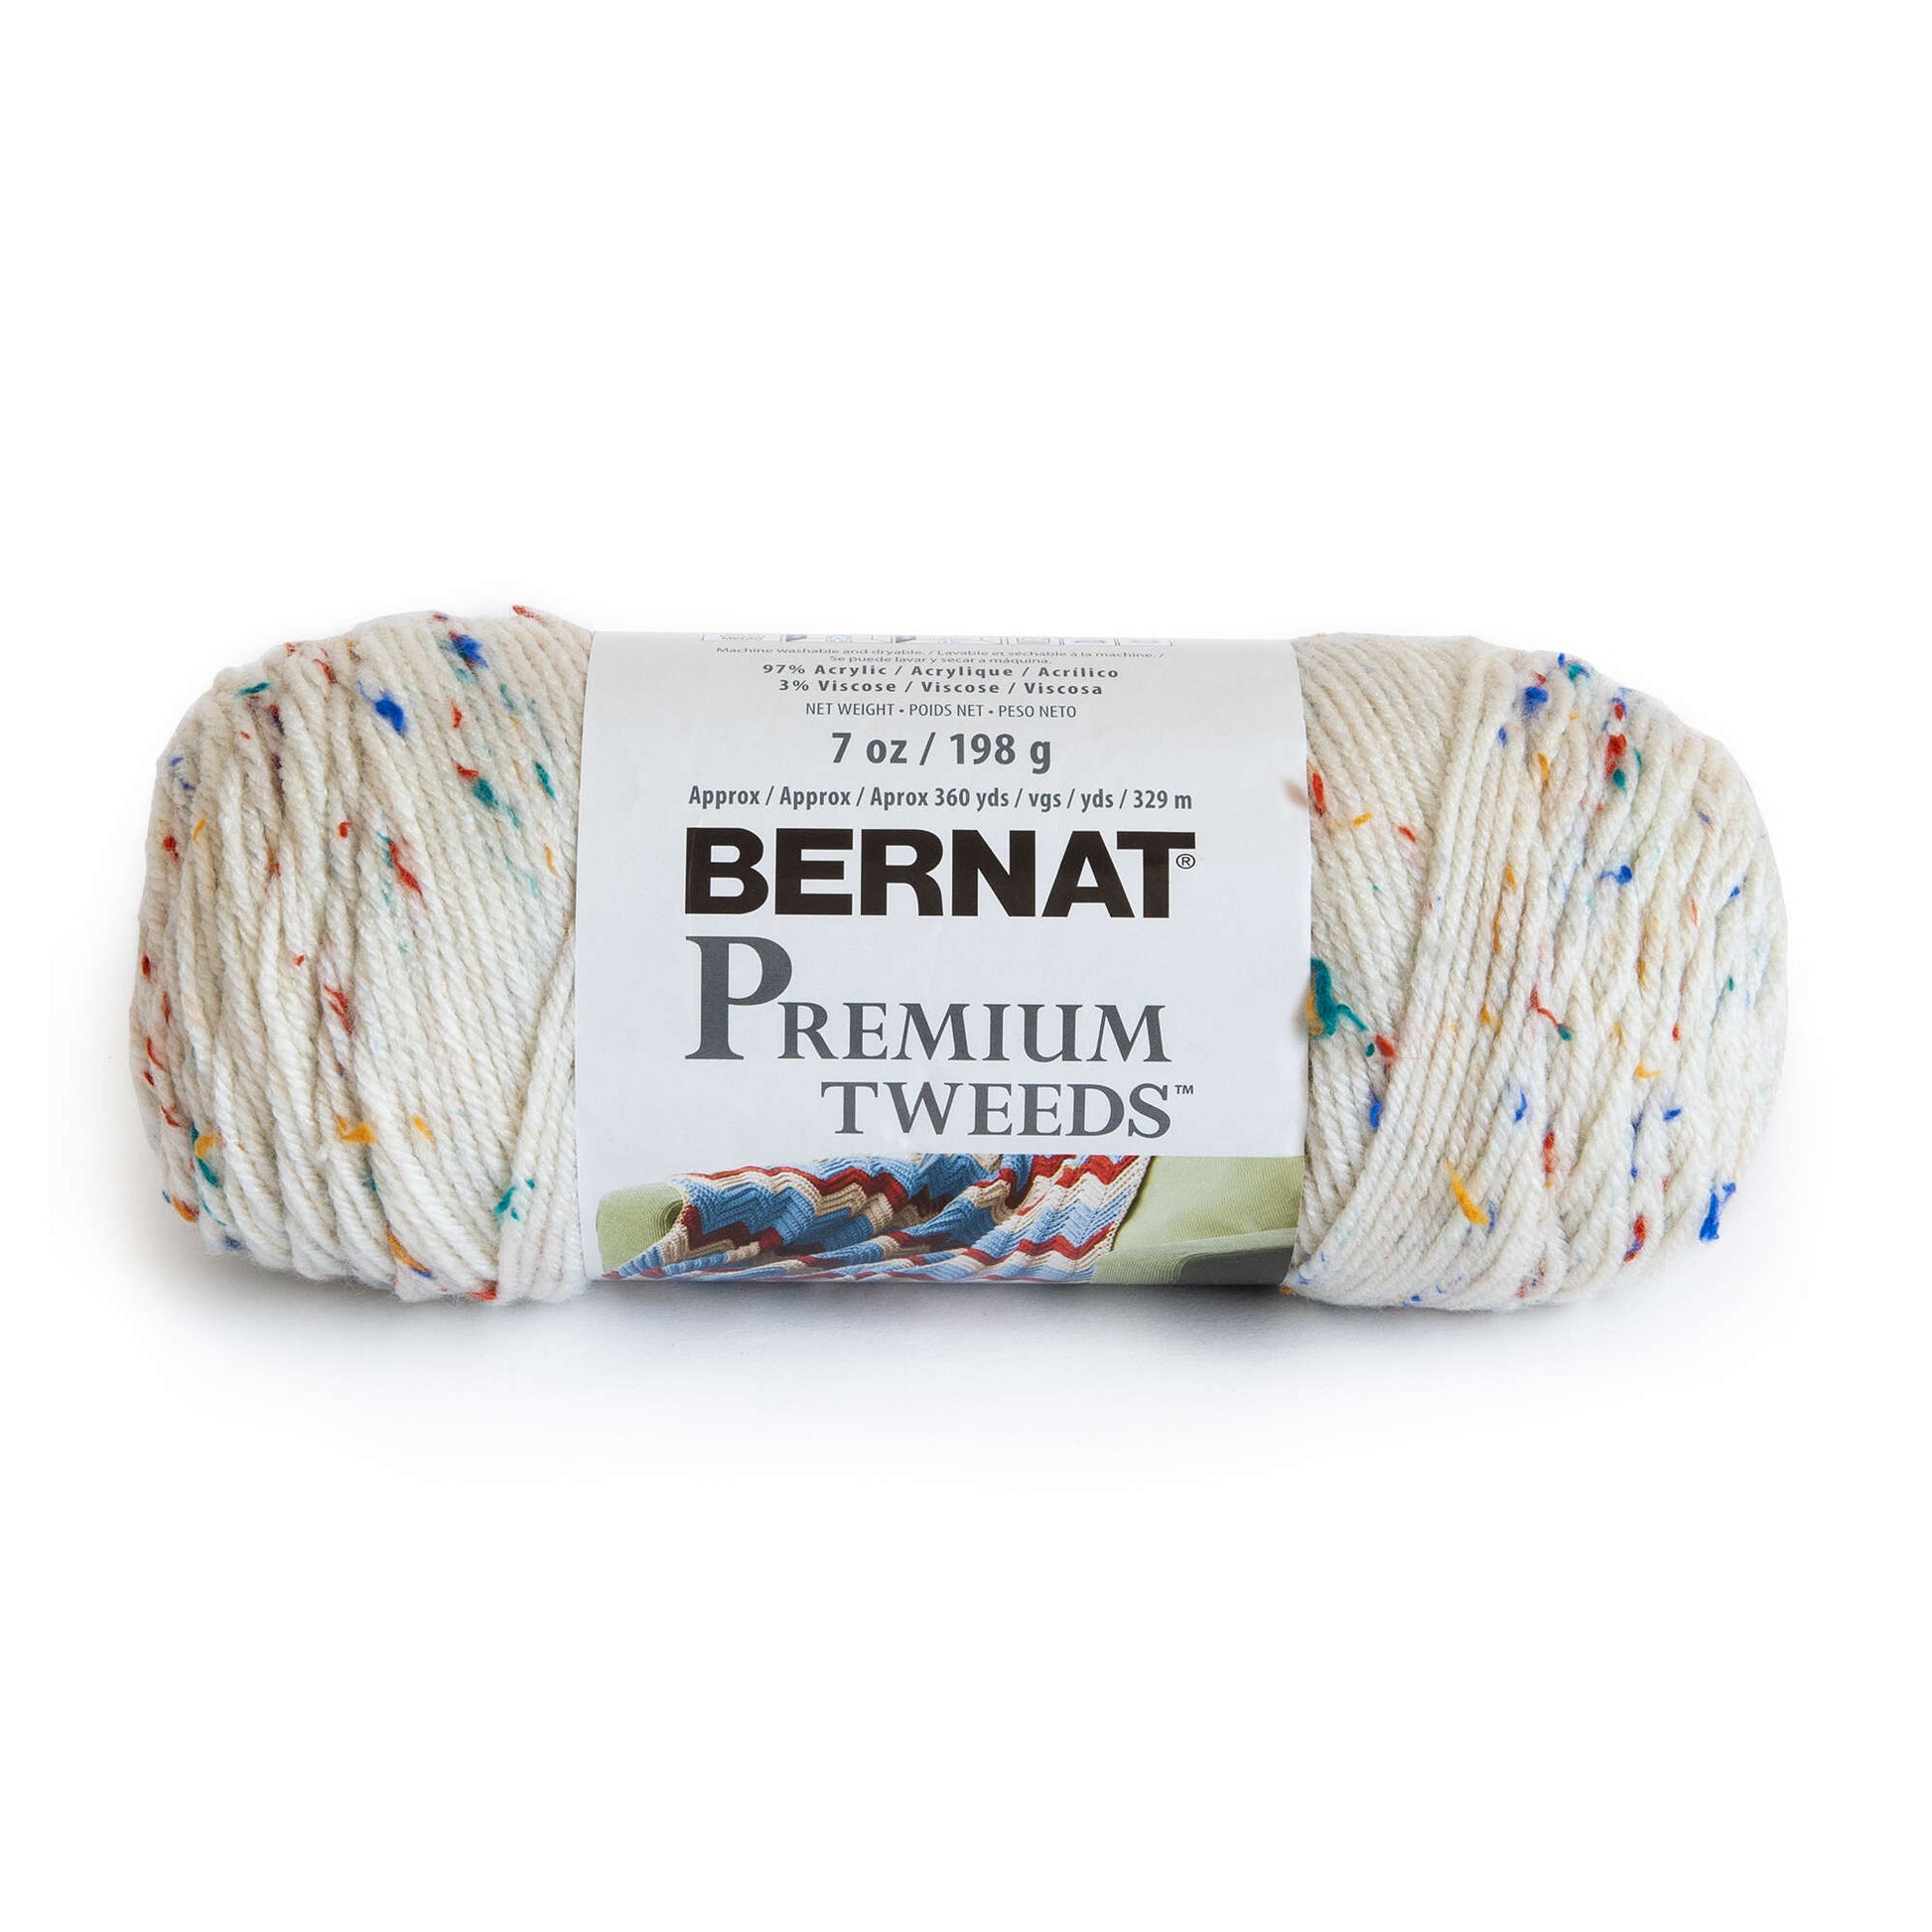 Bernat Premium Tweeds Yarn Rainbow Tweed